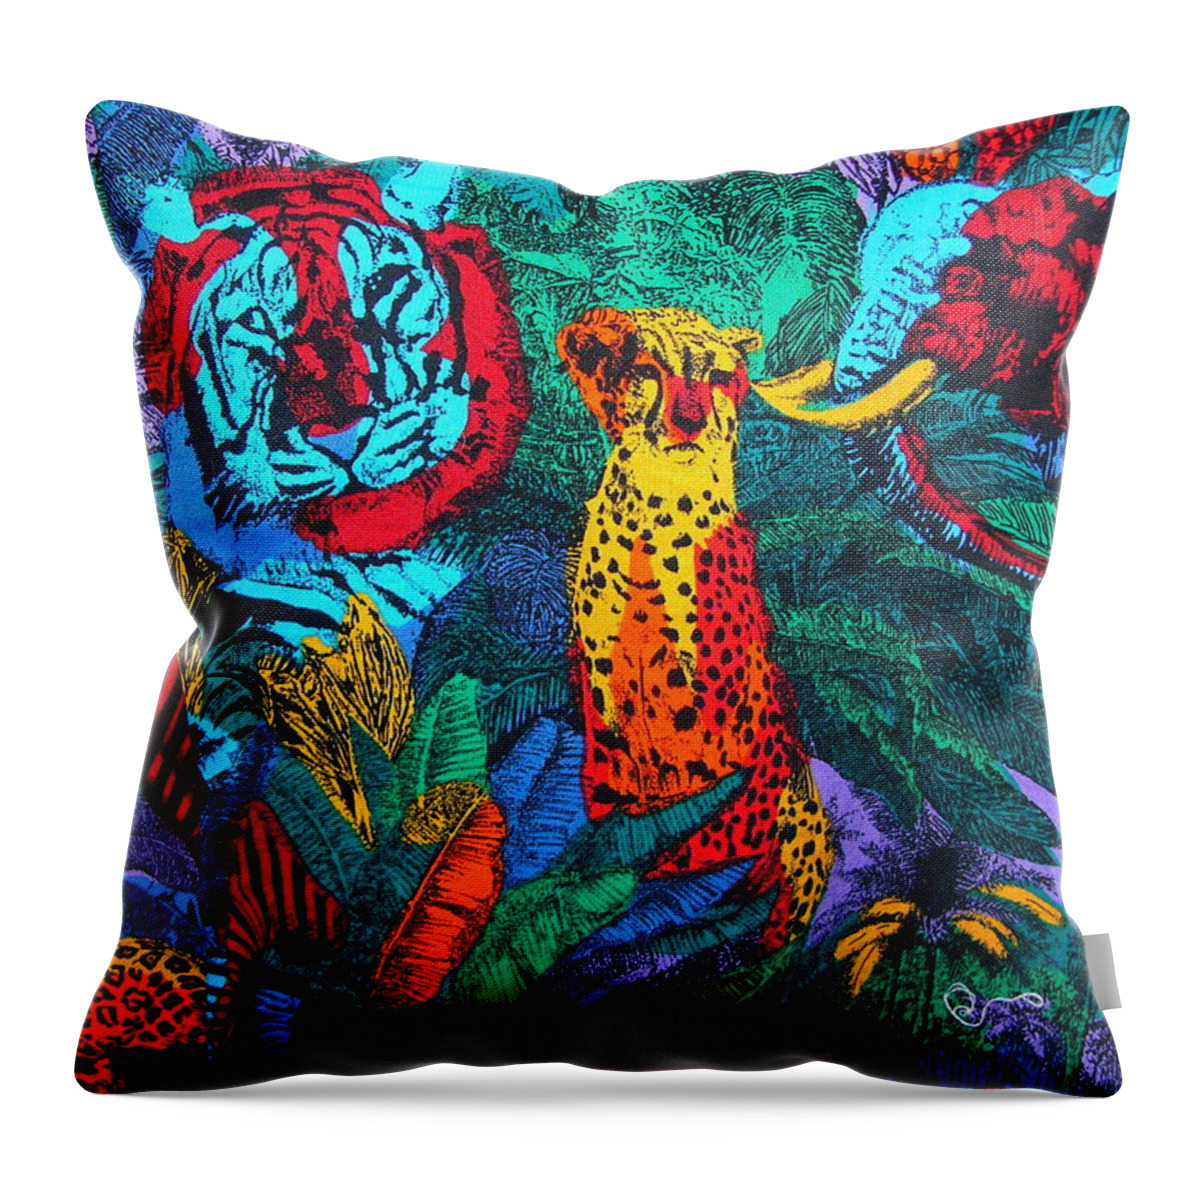 Hawaiian Throw Pillow featuring the digital art Texture #21 #1 by Scott S Baker